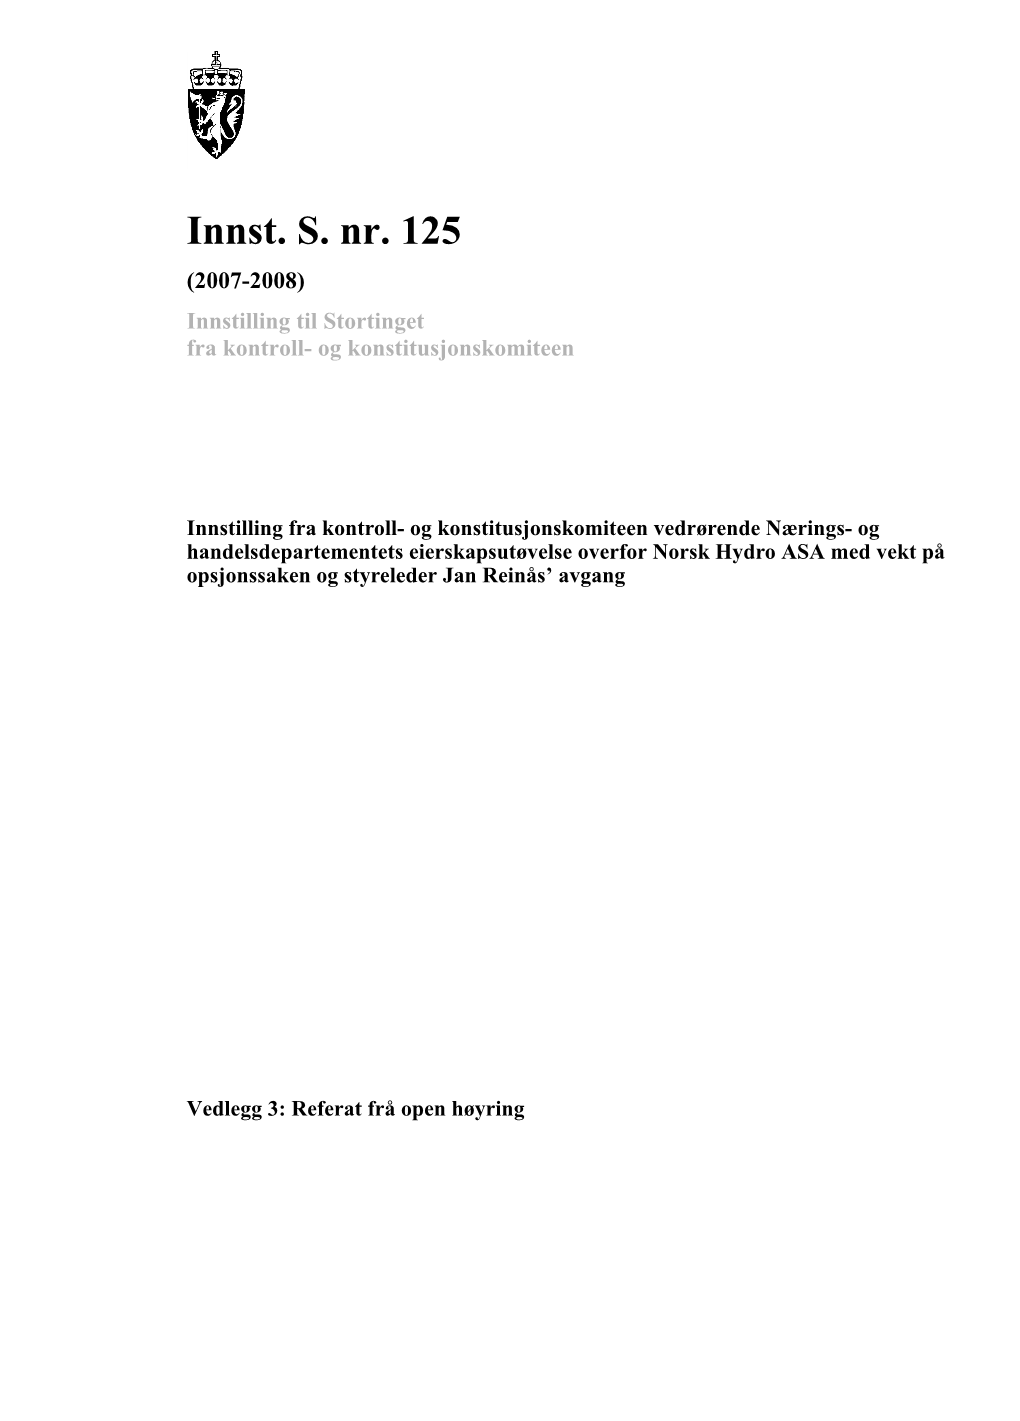 Innst. S. Nr. 125 (2007-2008) Innstilling Til Stortinget Fra Kontroll- Og Konstitusjonskomiteen